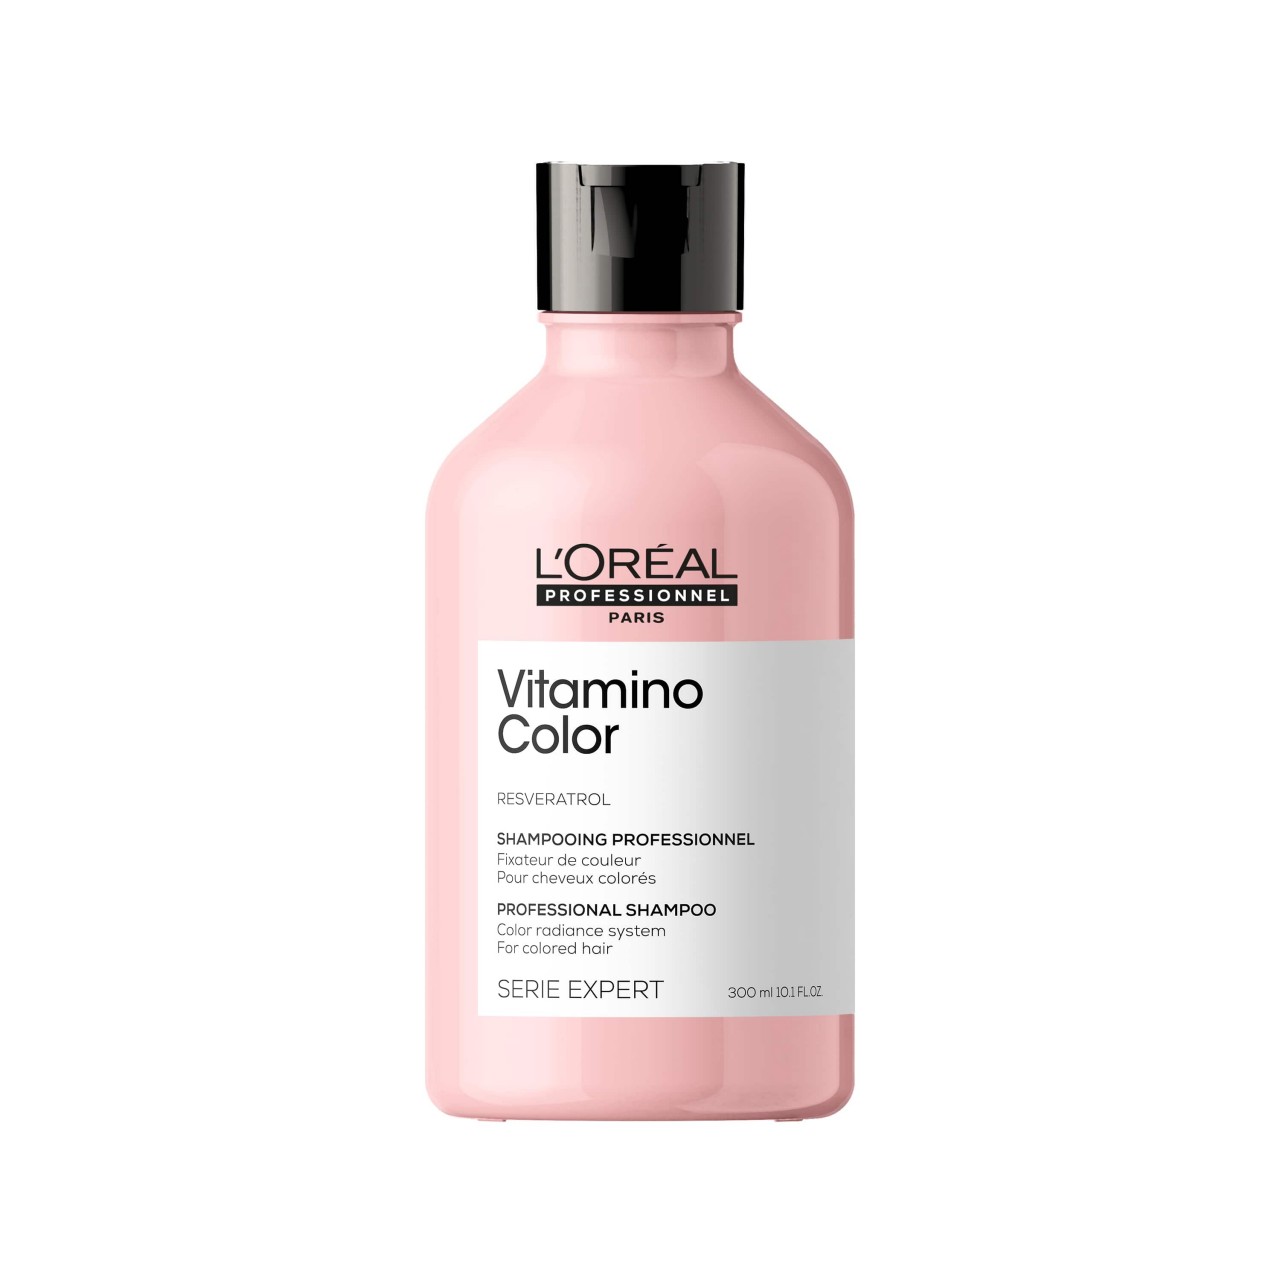 L'Oreal Professionnel - Vitamino Color Shampoo - 